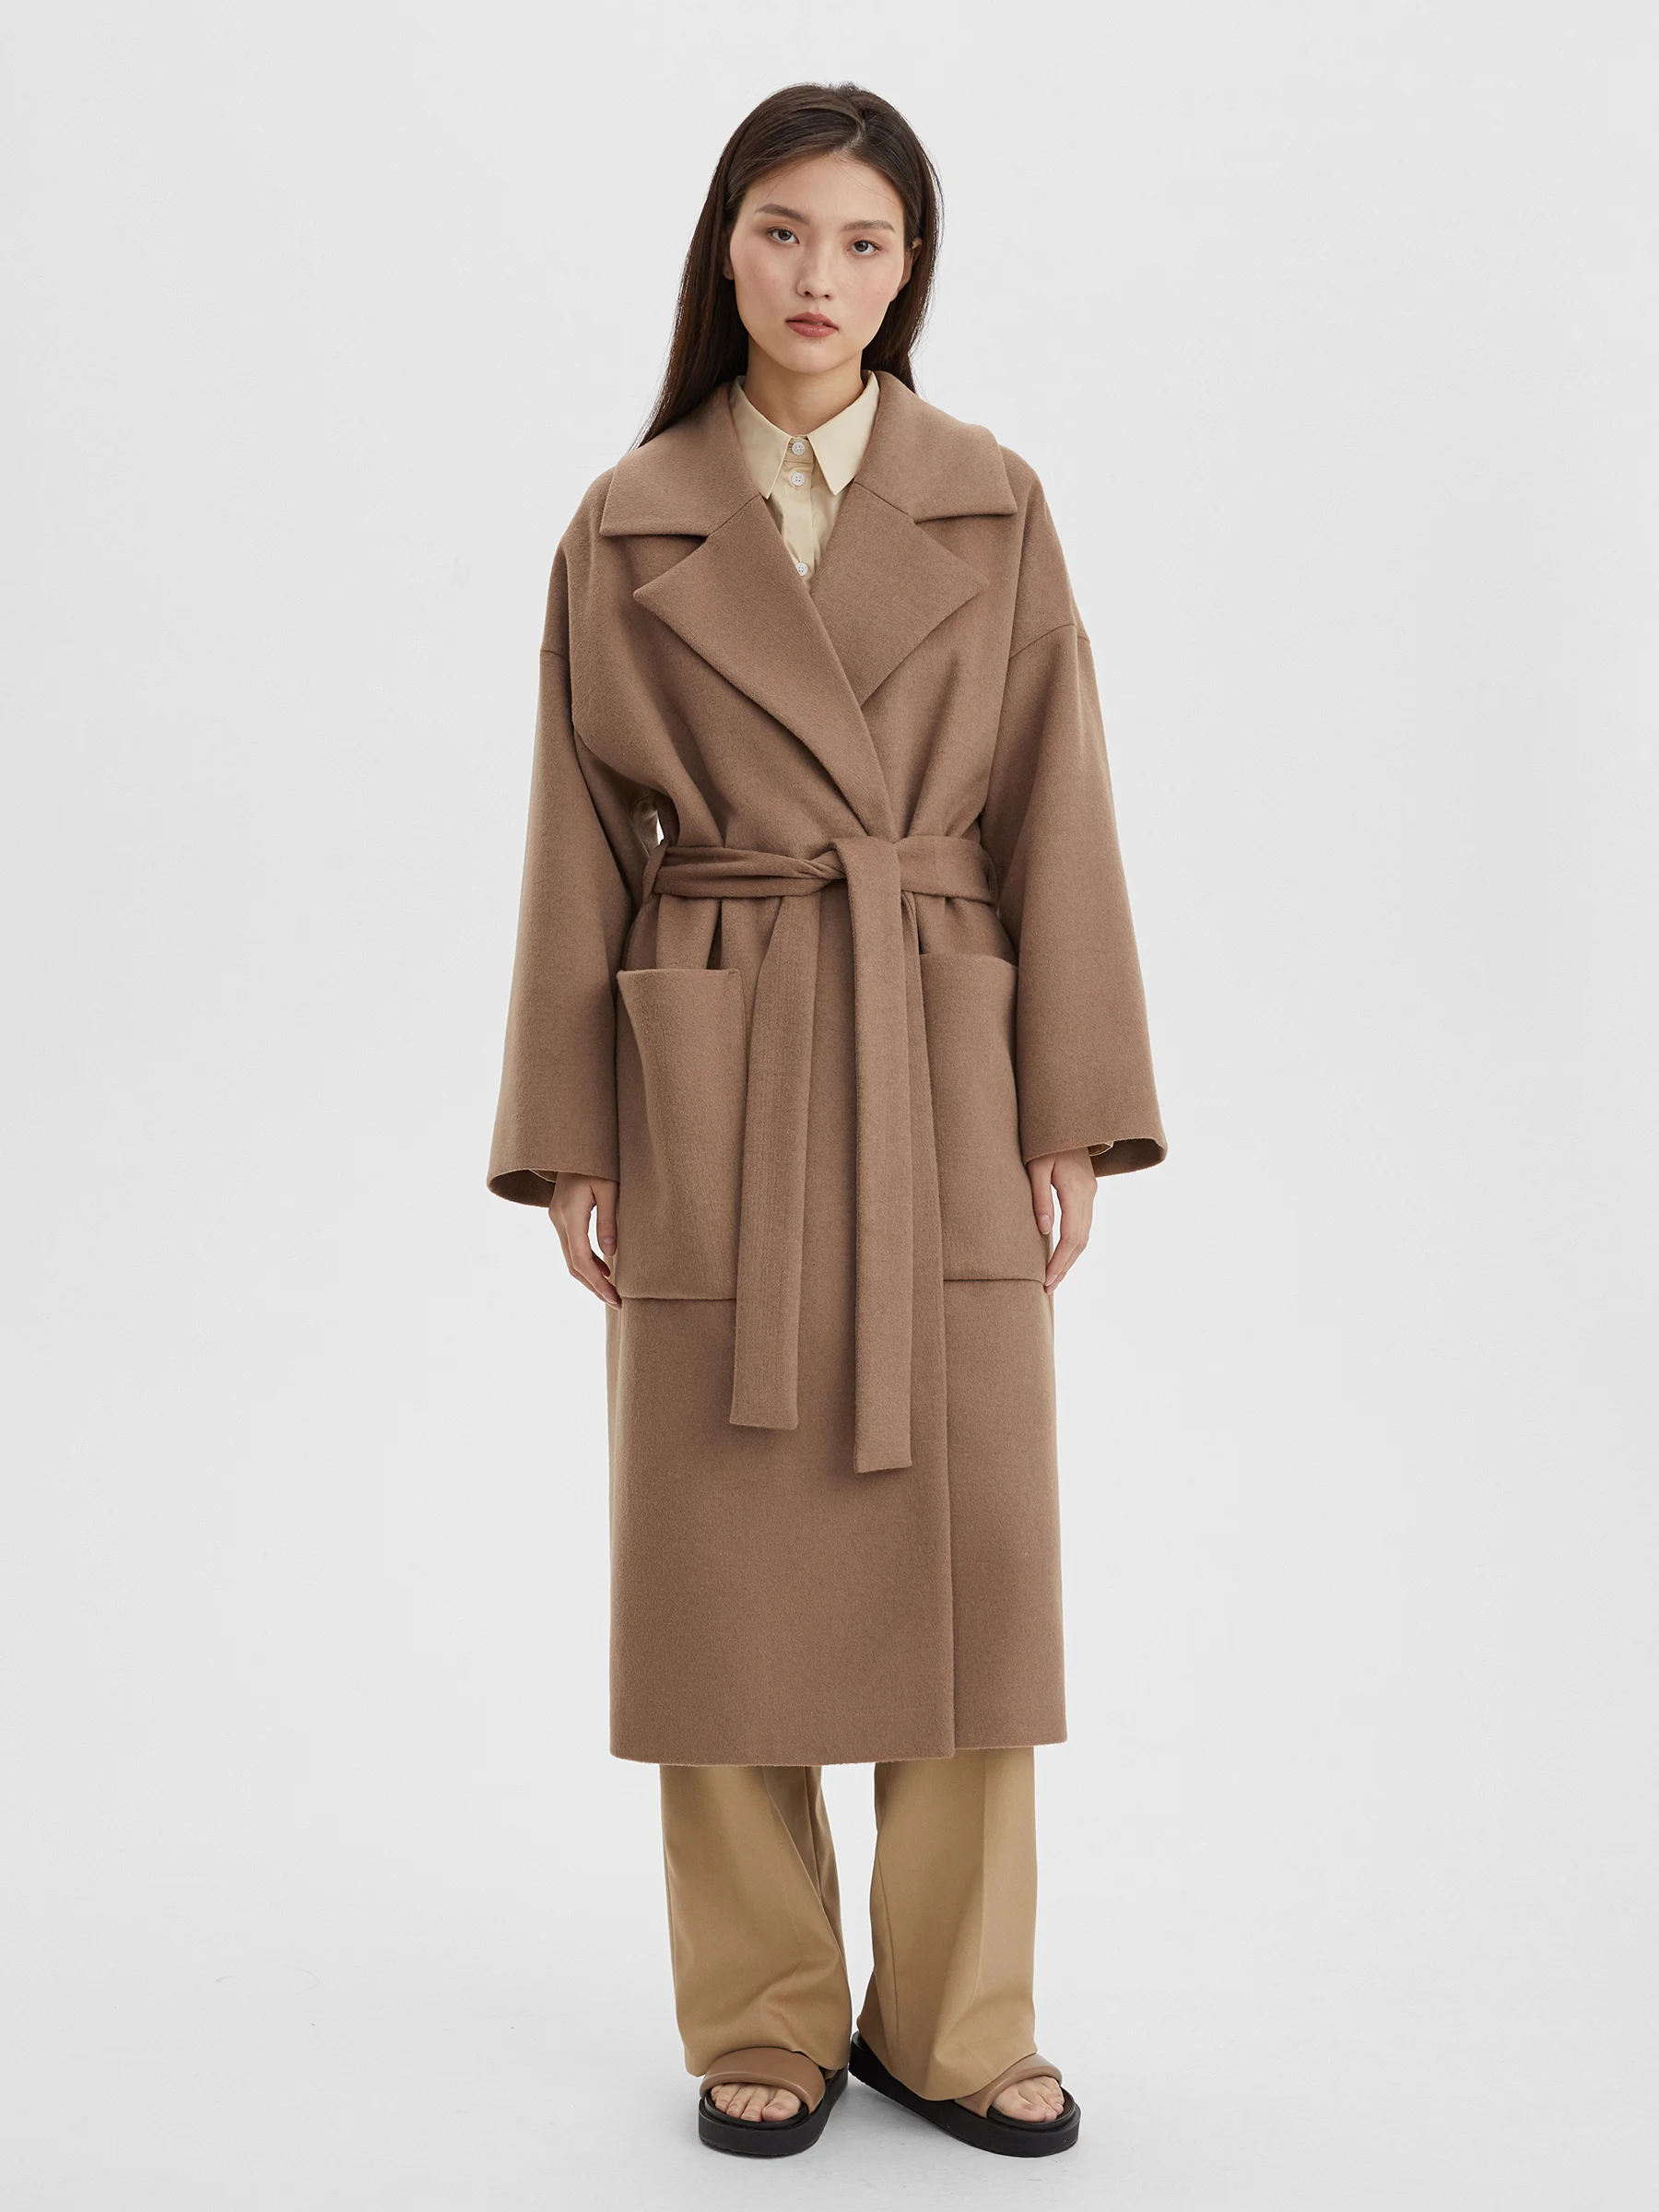 женское хлопковое пальто с большим меховым воротником свободного покроя средней длины m289 Пальто женское длинное с объемными карманами и поясом, цвет – бежевый